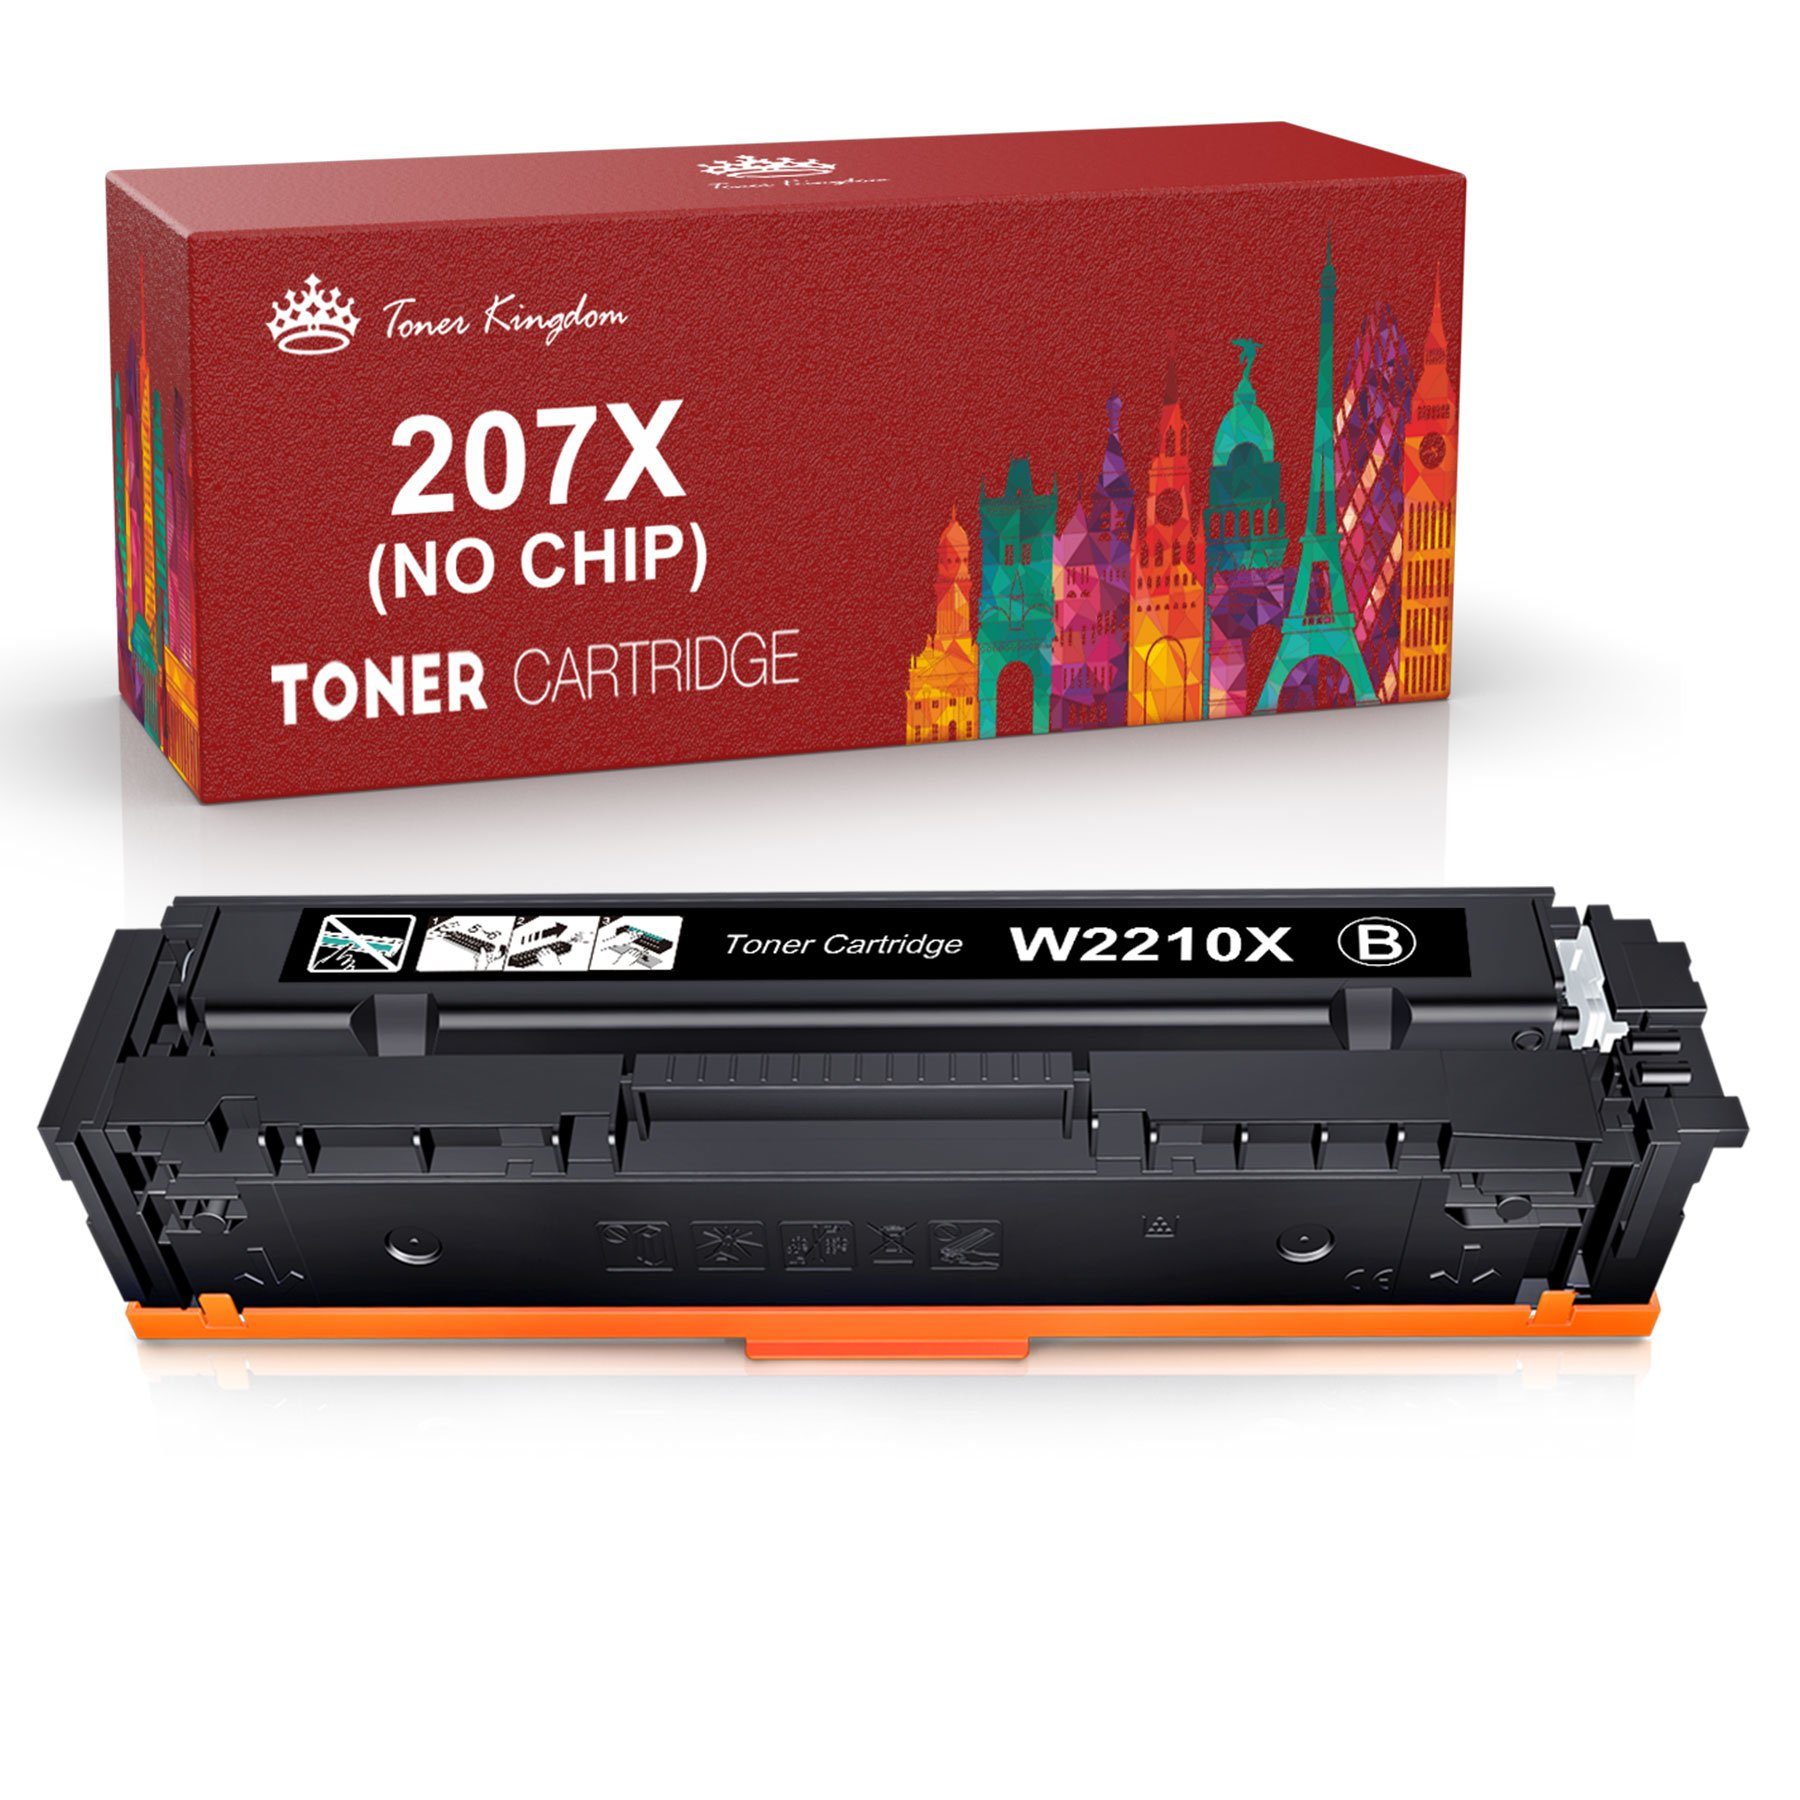 Toner Kingdom Tonerpatrone Ohne Chip 207X Laserjet M255dw M283fdw 207A Pro 207X M283fdn HP MFP W2213X, für M282nw Schwarz M255nw W2211X W2212X W2210X Color